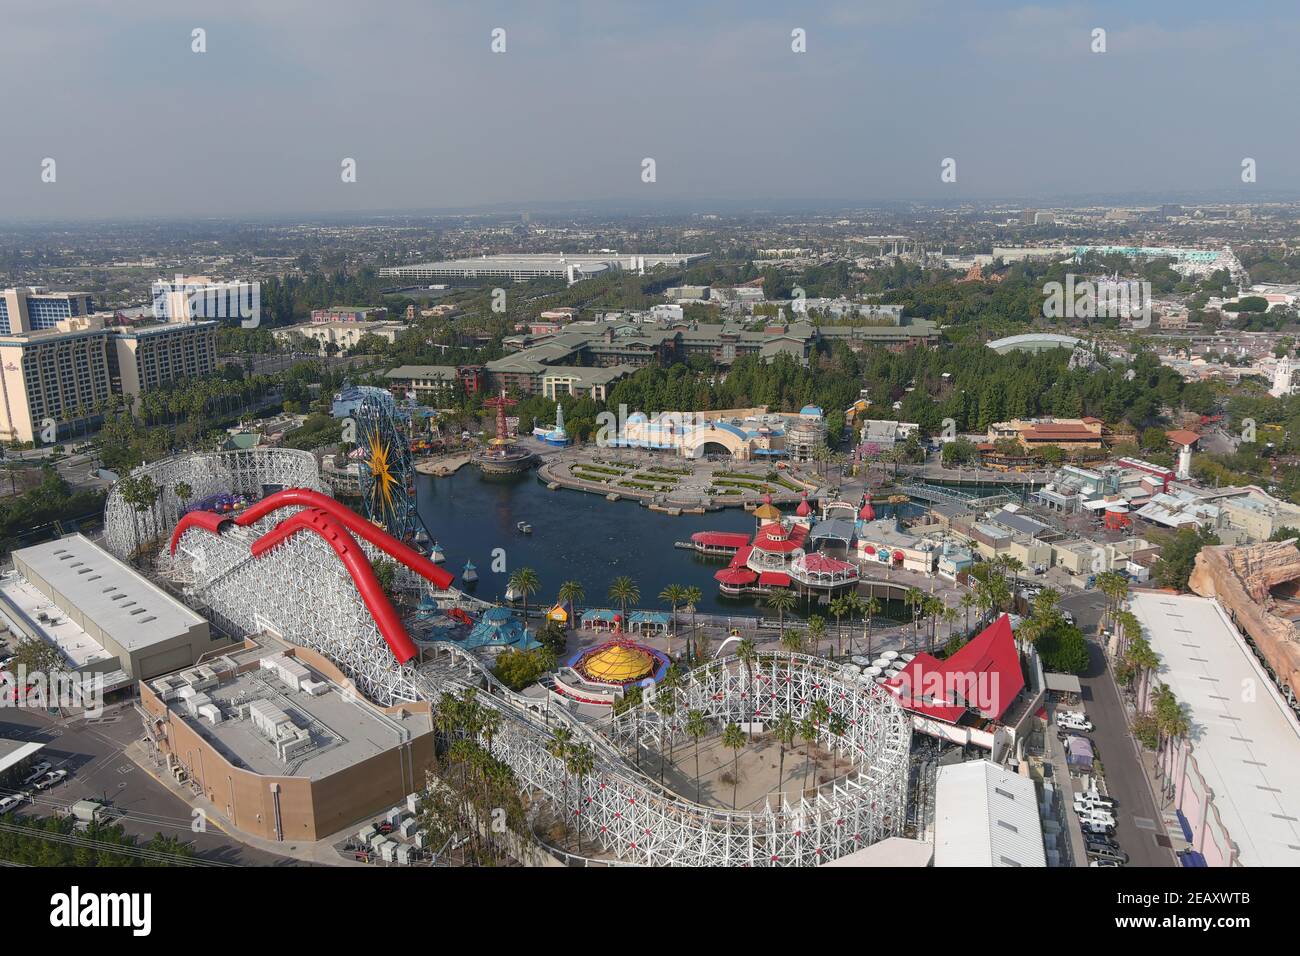 Une vue aérienne de Disney California Adventure et de Disneyland Park, le mercredi 10 février 2021, à Anaheim, Calif. Banque D'Images